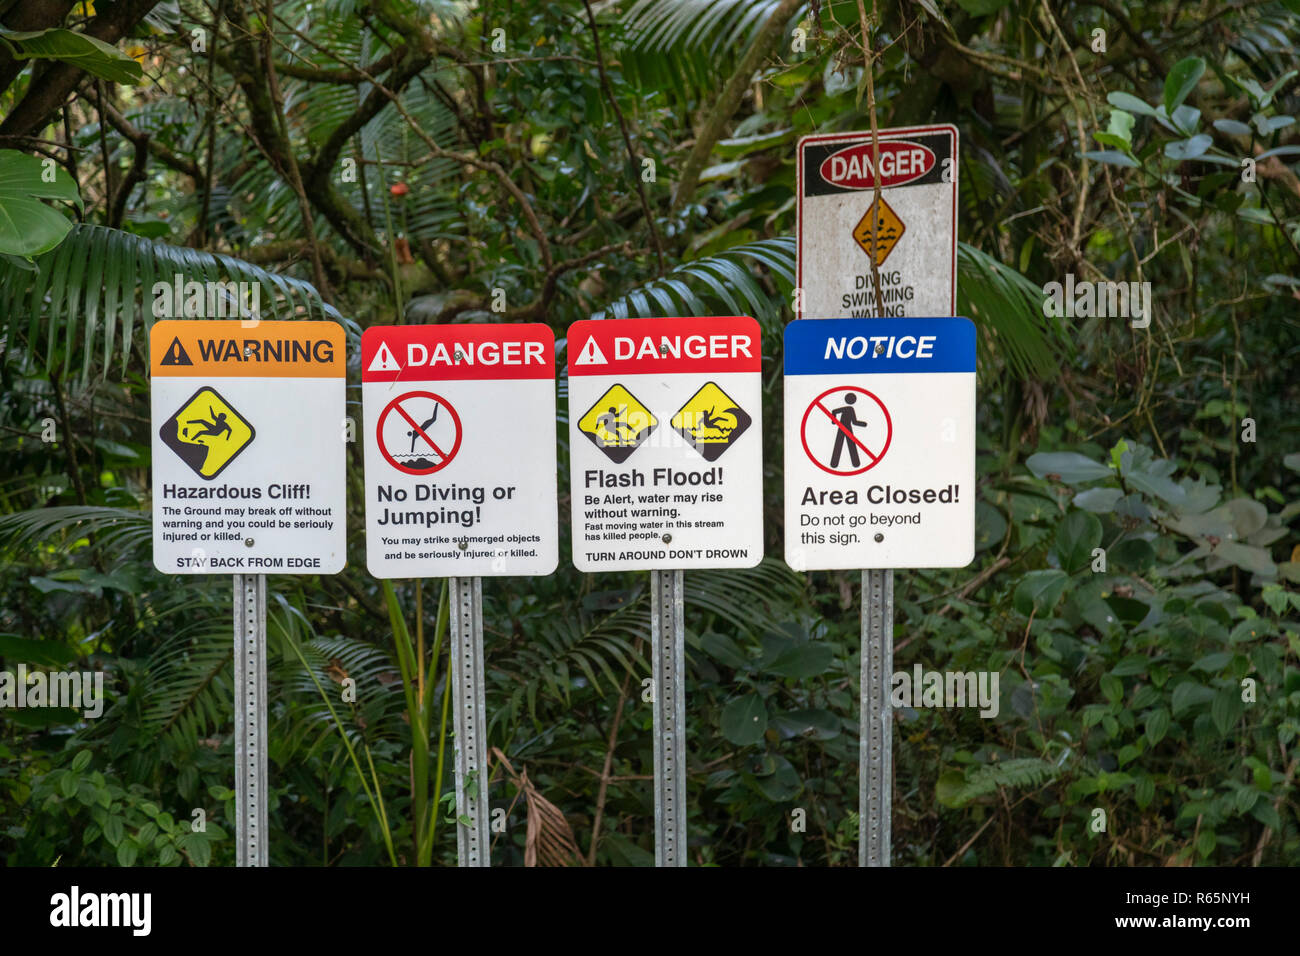 Hilo, Hawaii - Warning signs at Rainbow Falls. Stock Photo